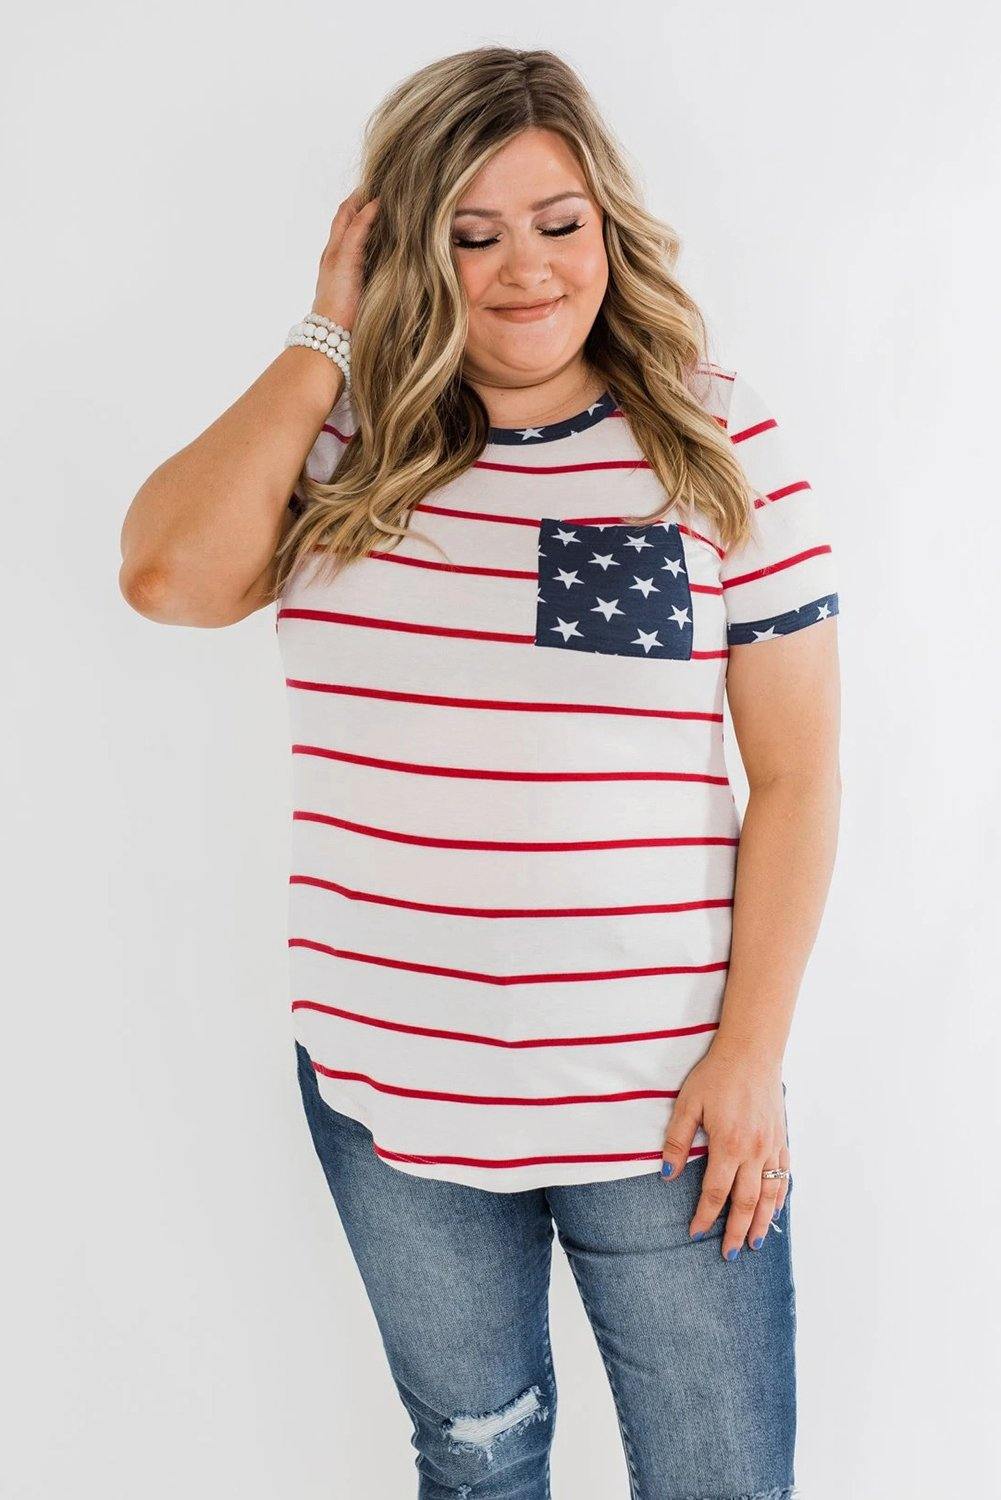 Stripes & Stars Plus Size T-shirt - L & M Kee, LLC